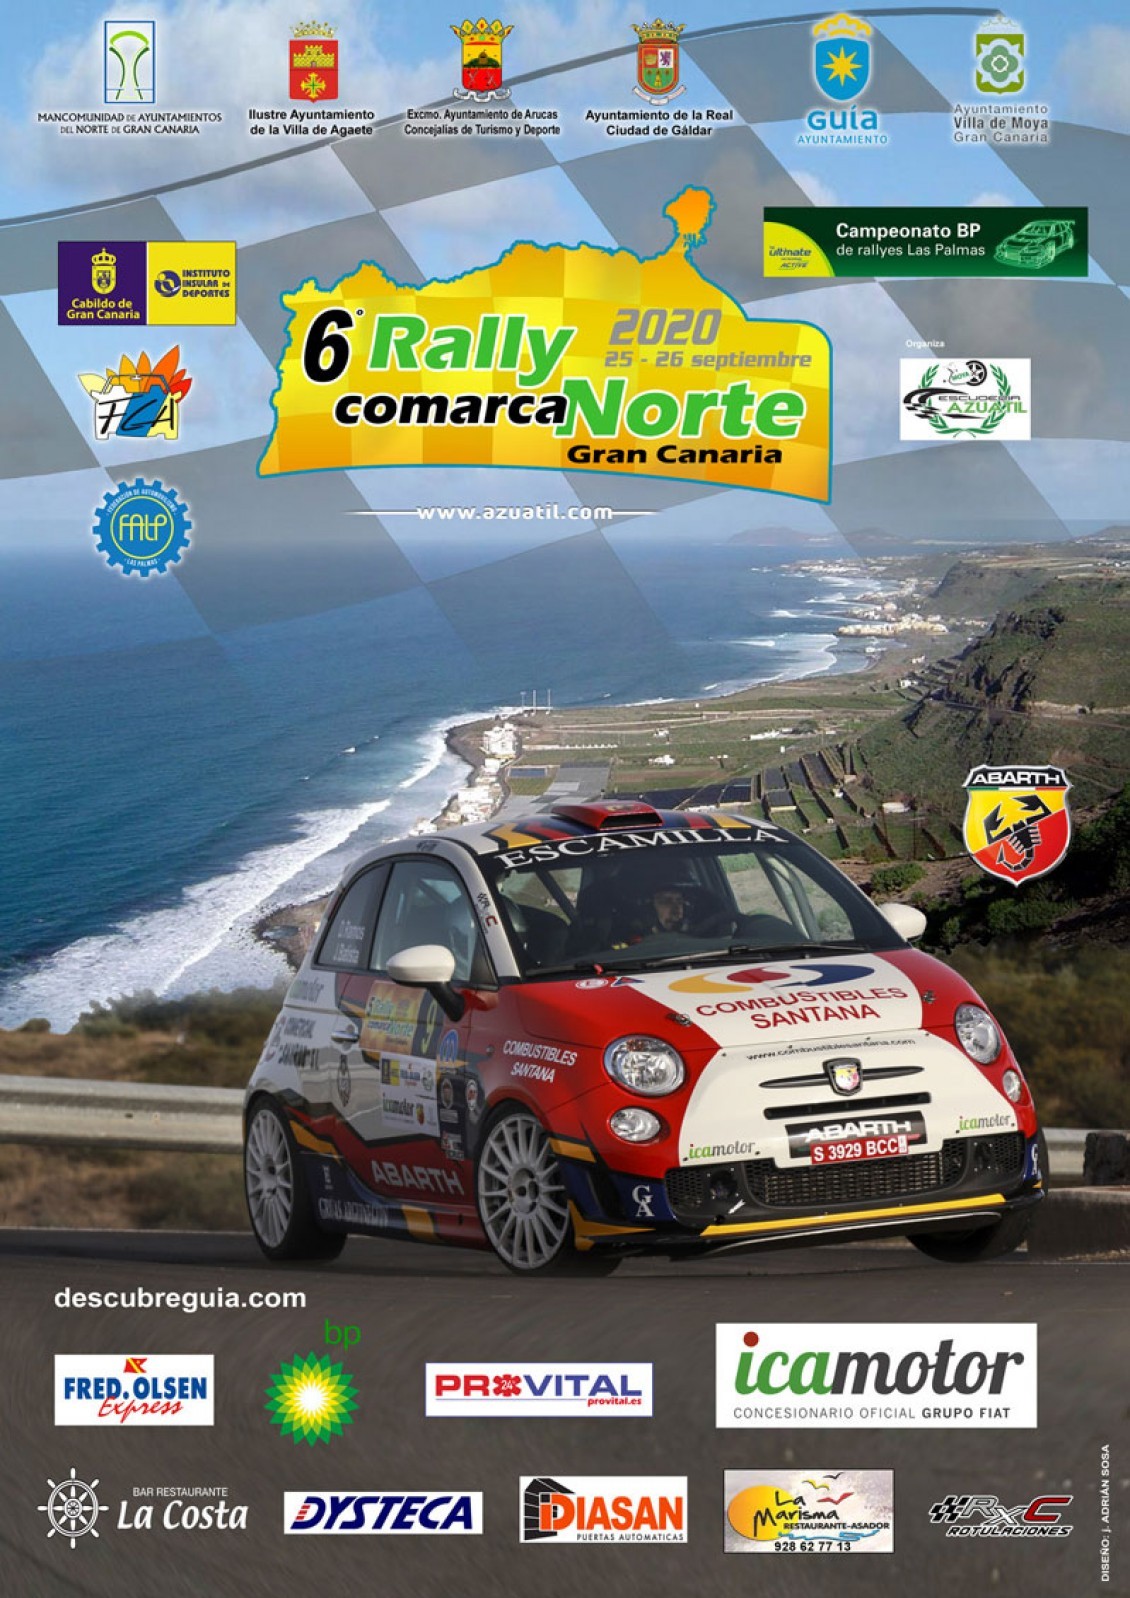 El jueves, día clave para el Rally Comarca Norte